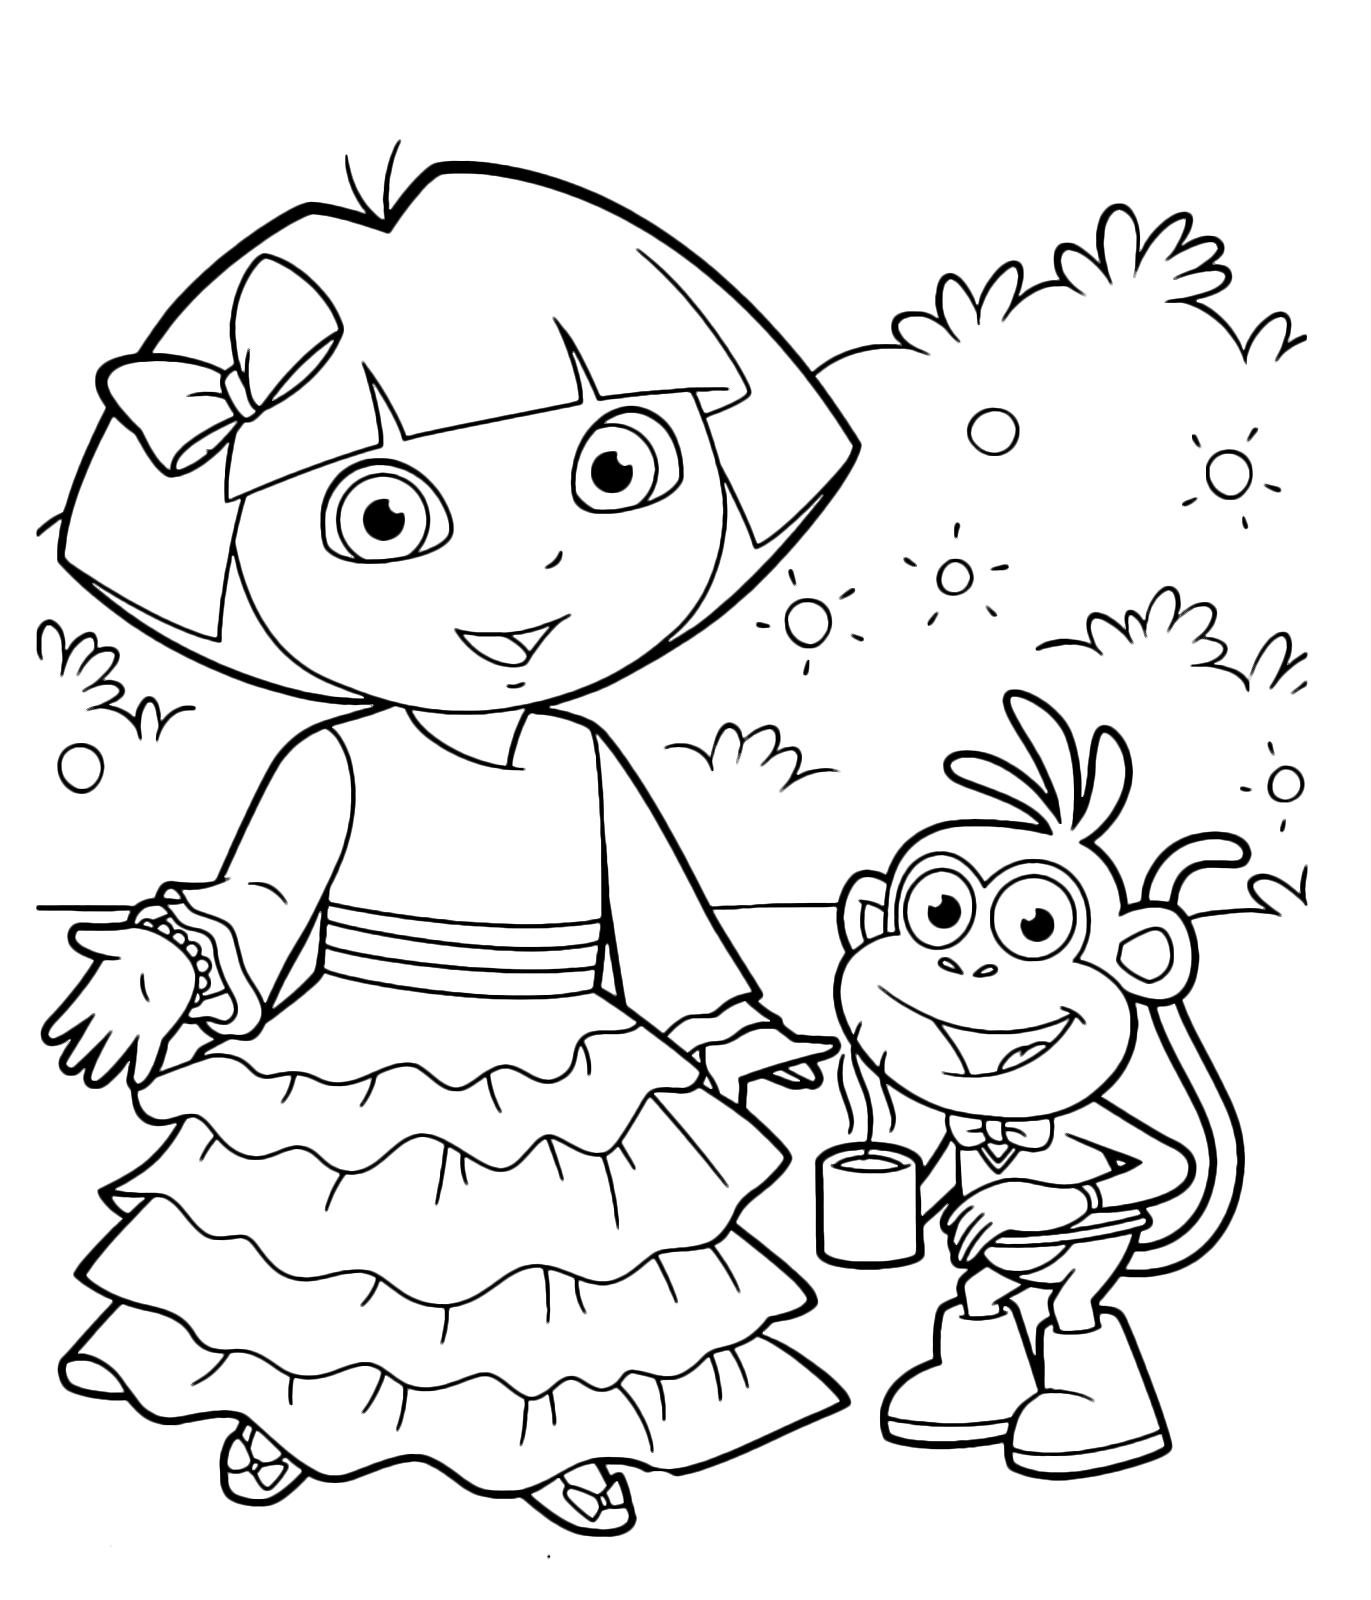 Dora l'esploratrice - Dora indossa un bellissimo abito lungo mentre Boots tiene una tazza